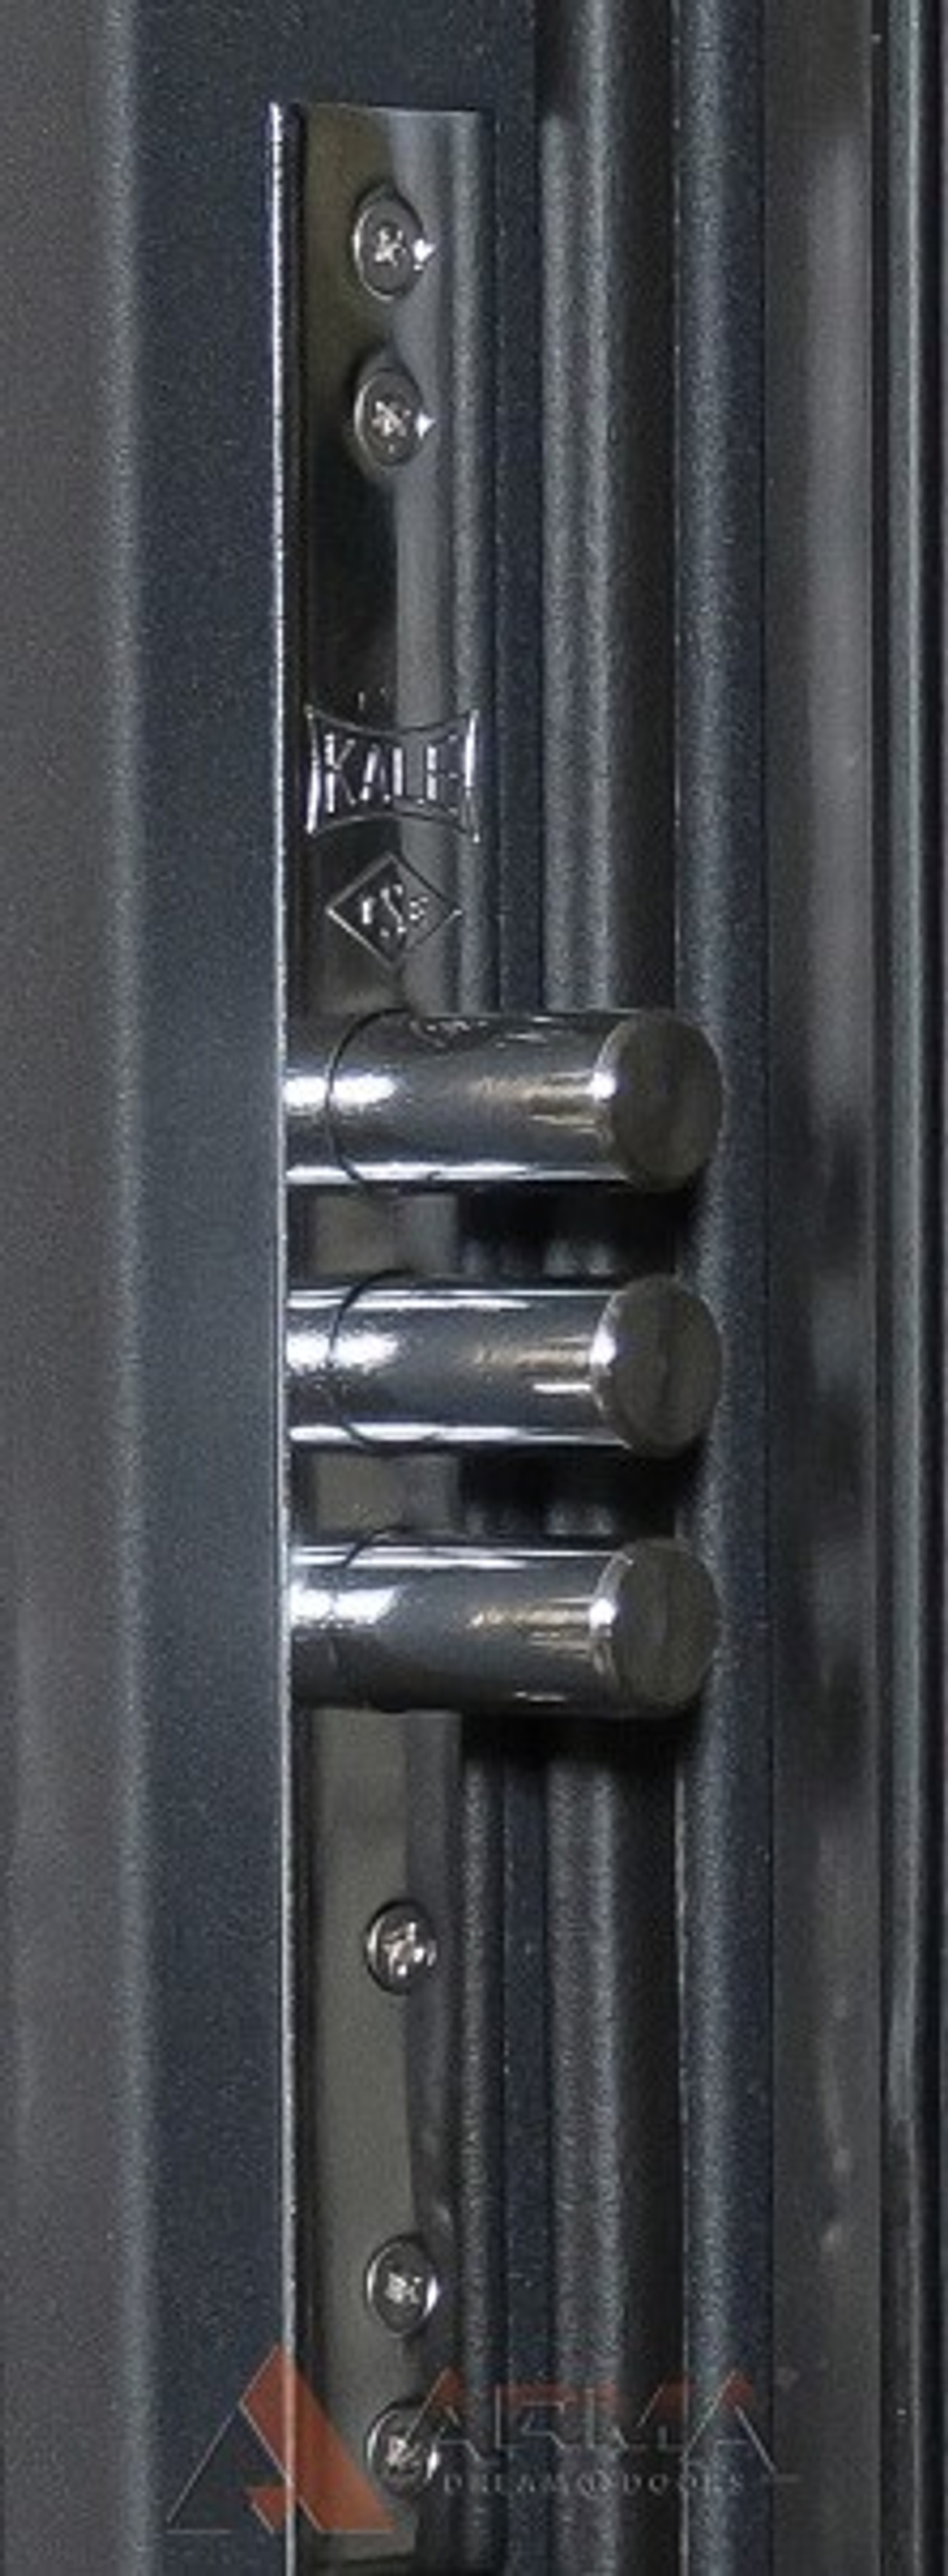 Входная металлическая дверь Нео Ясень 15 Софт белый без текстуры (фурнитура ХРОМ блестящий)